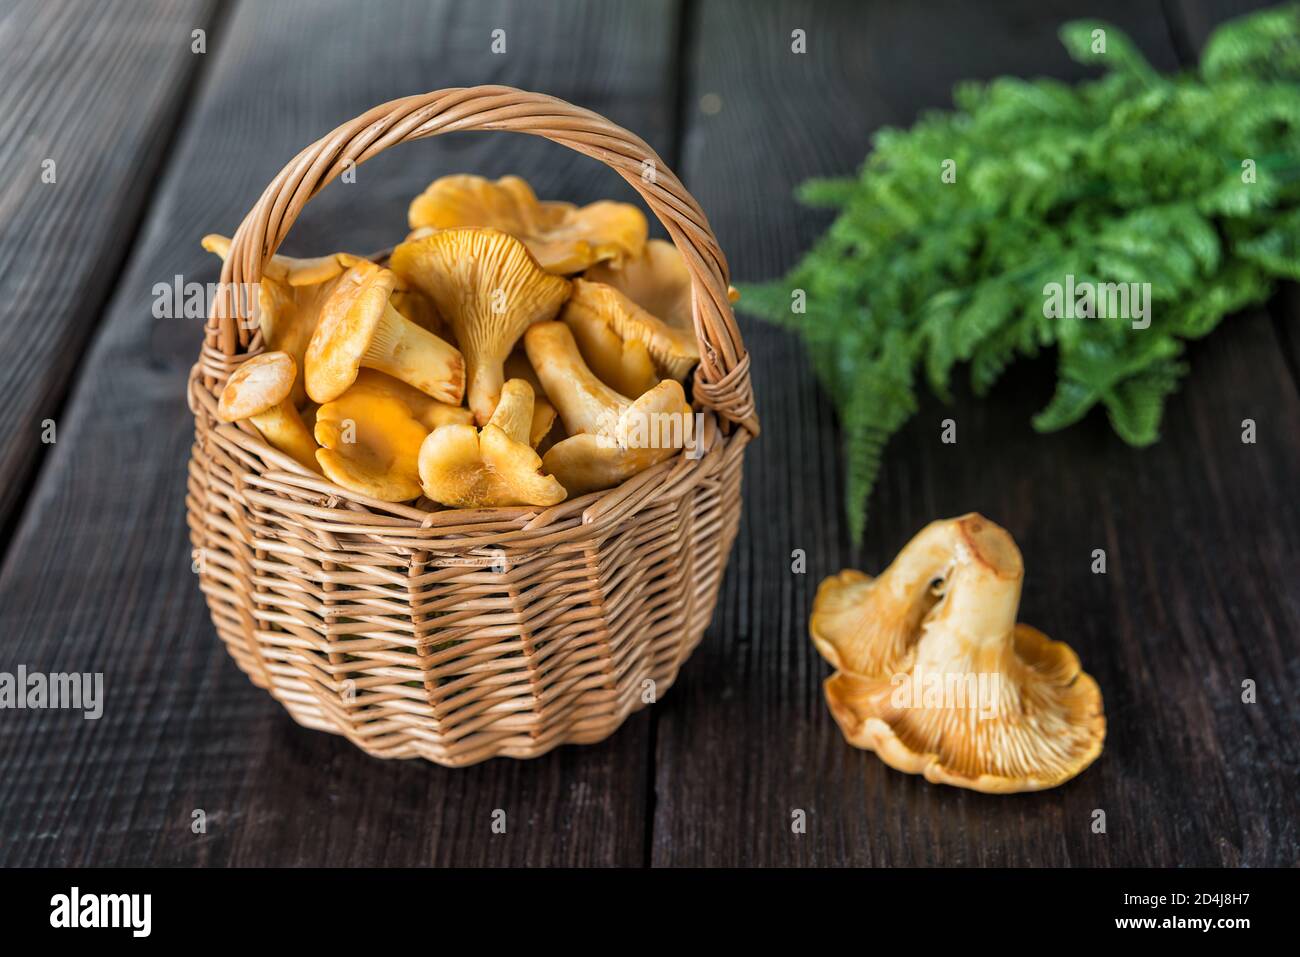 Funghi chanterelle gialli in un cesto di vimini al buio tavolo di legno Foto Stock